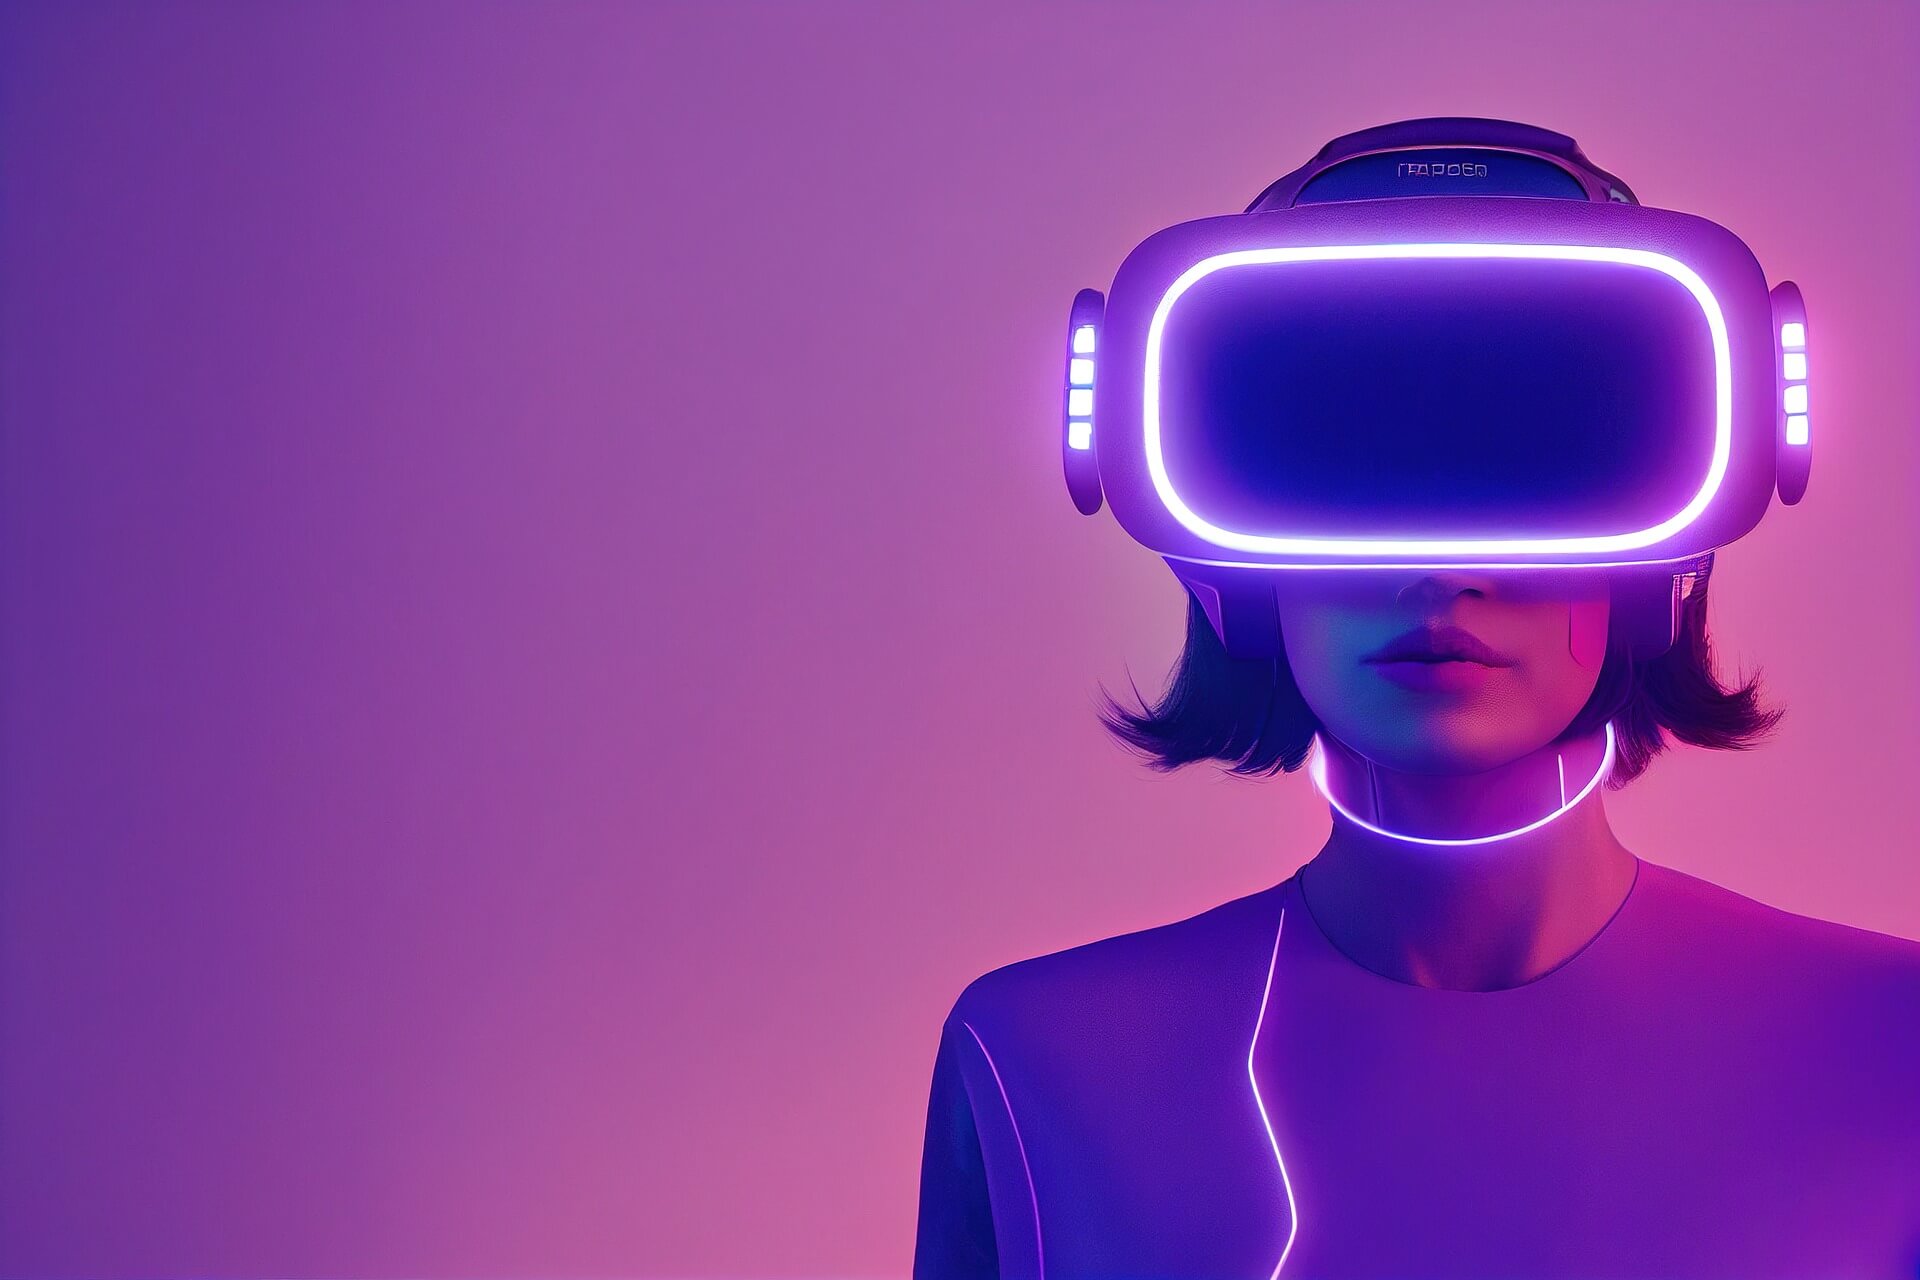 图片展示一位女性佩戴着虚拟现实头盔，紫色背景下，她的轮廓被霓虹光线勾勒，科技感十足。